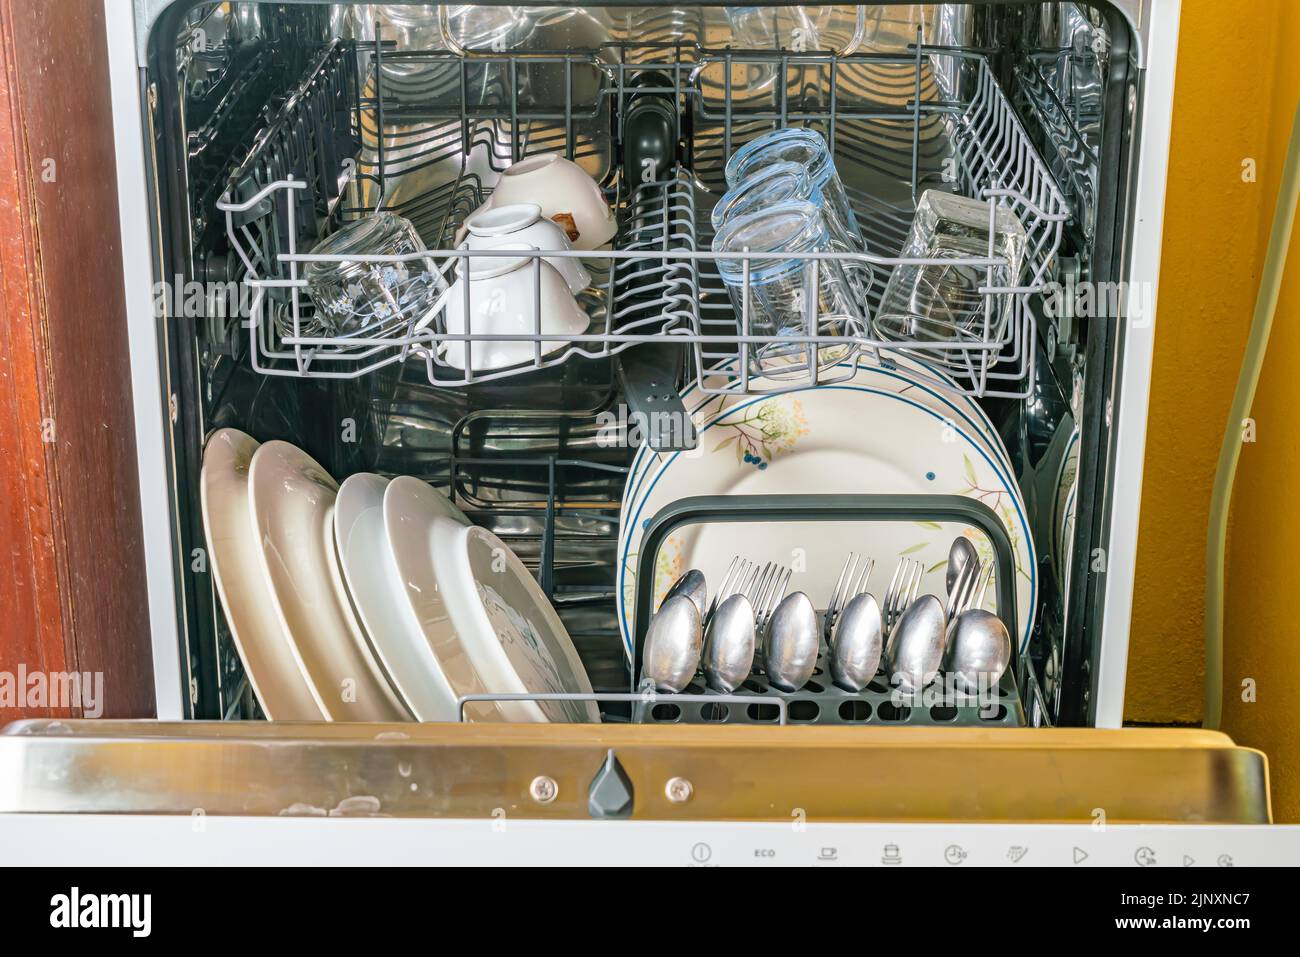 Vorderansicht des geöffneten Geschirrspülers mit sauberem Geschirr, Gläsern und anderen Küchenutensilien nach der Reinigung. Stockfoto